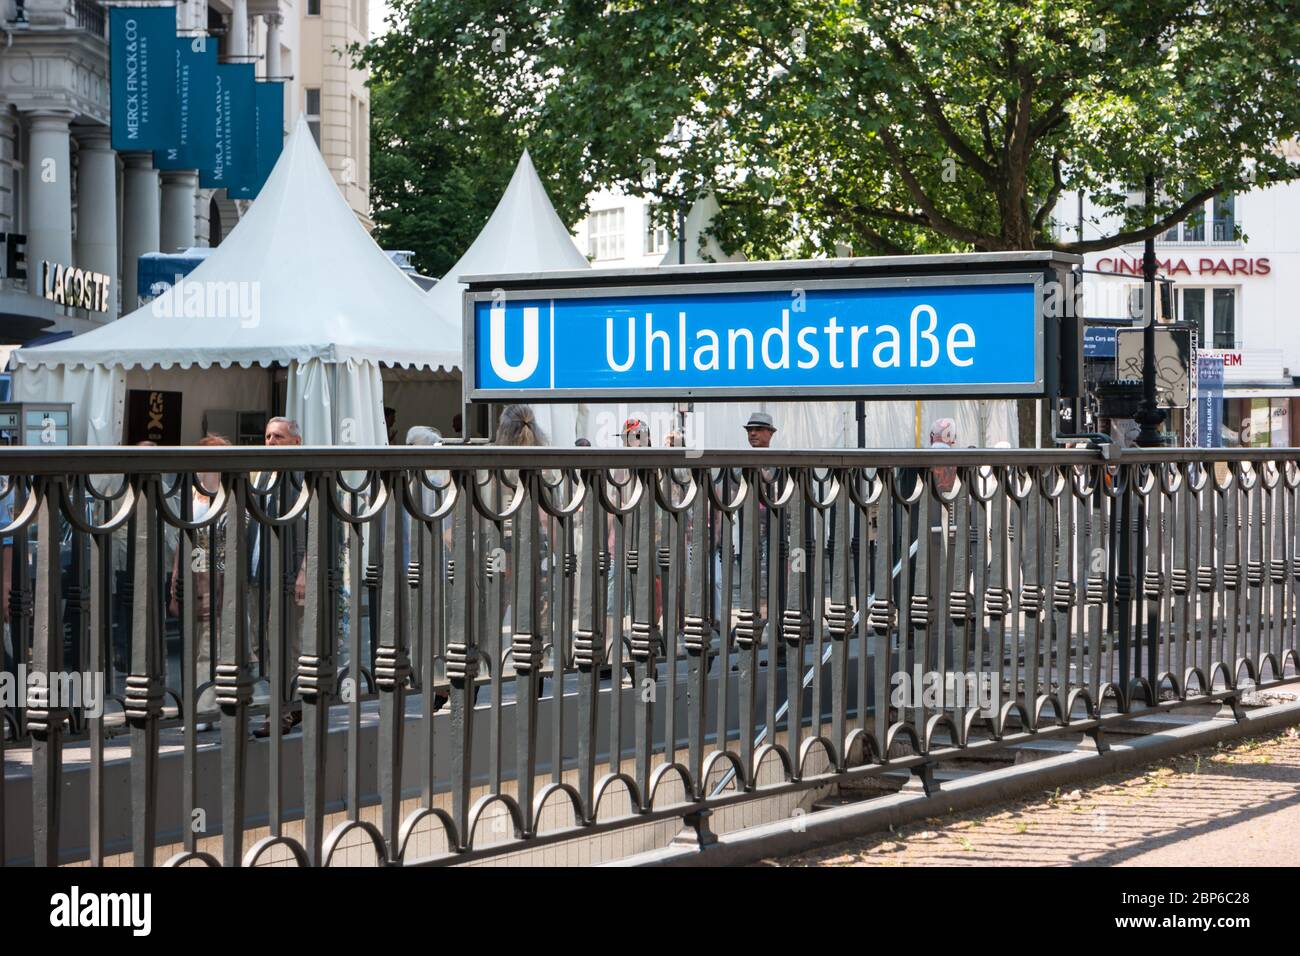 Berlino - Giugno 05, 2016: Urban stazione della metropolitana nel centro città (U-Bahn) - Ulandstrasse. Foto Stock